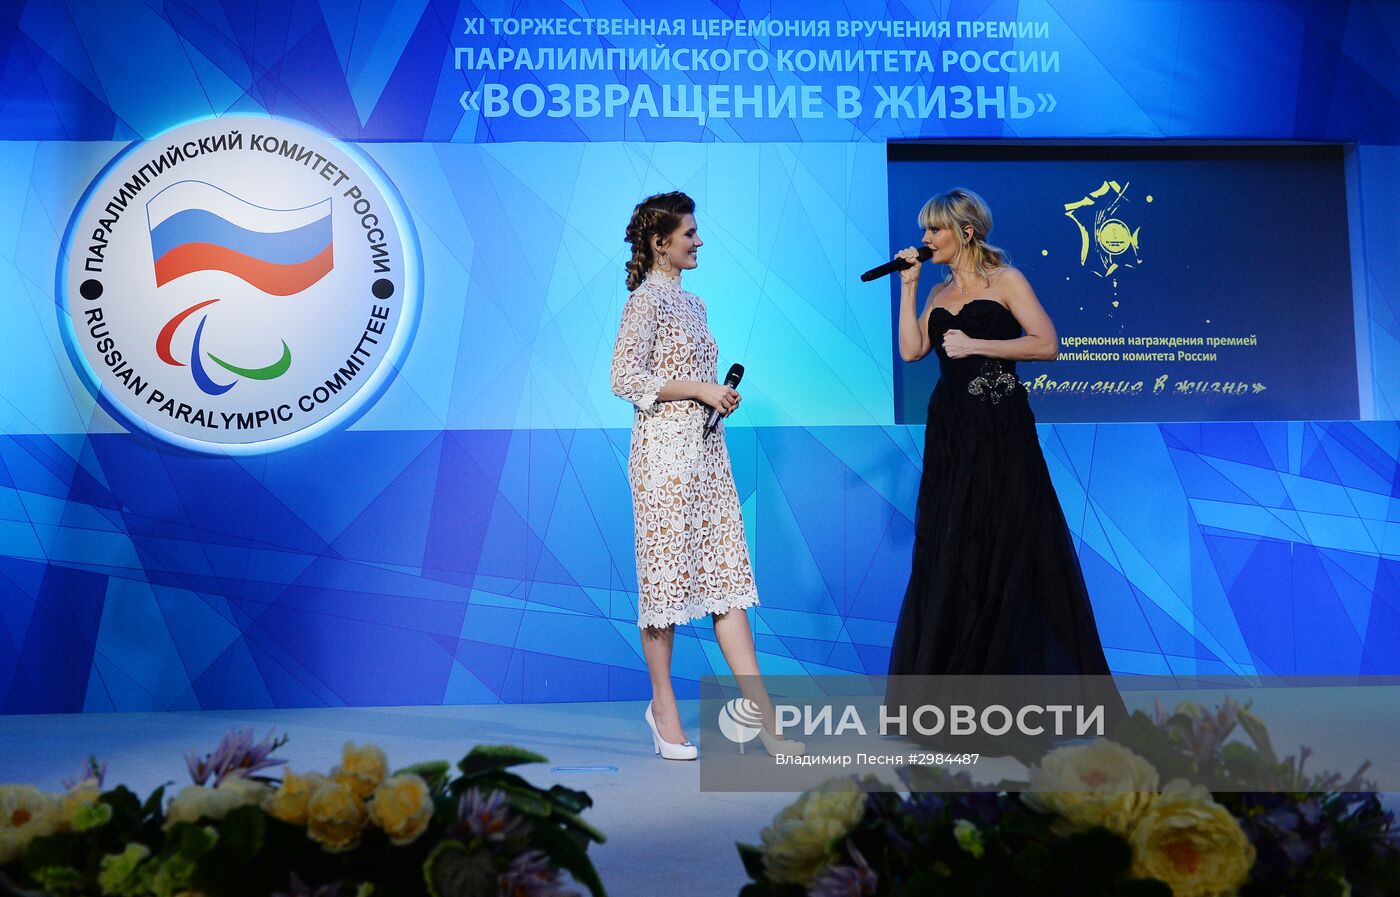 XI торжественная церемония награждения премией ПКР "Возвращение в жизнь"